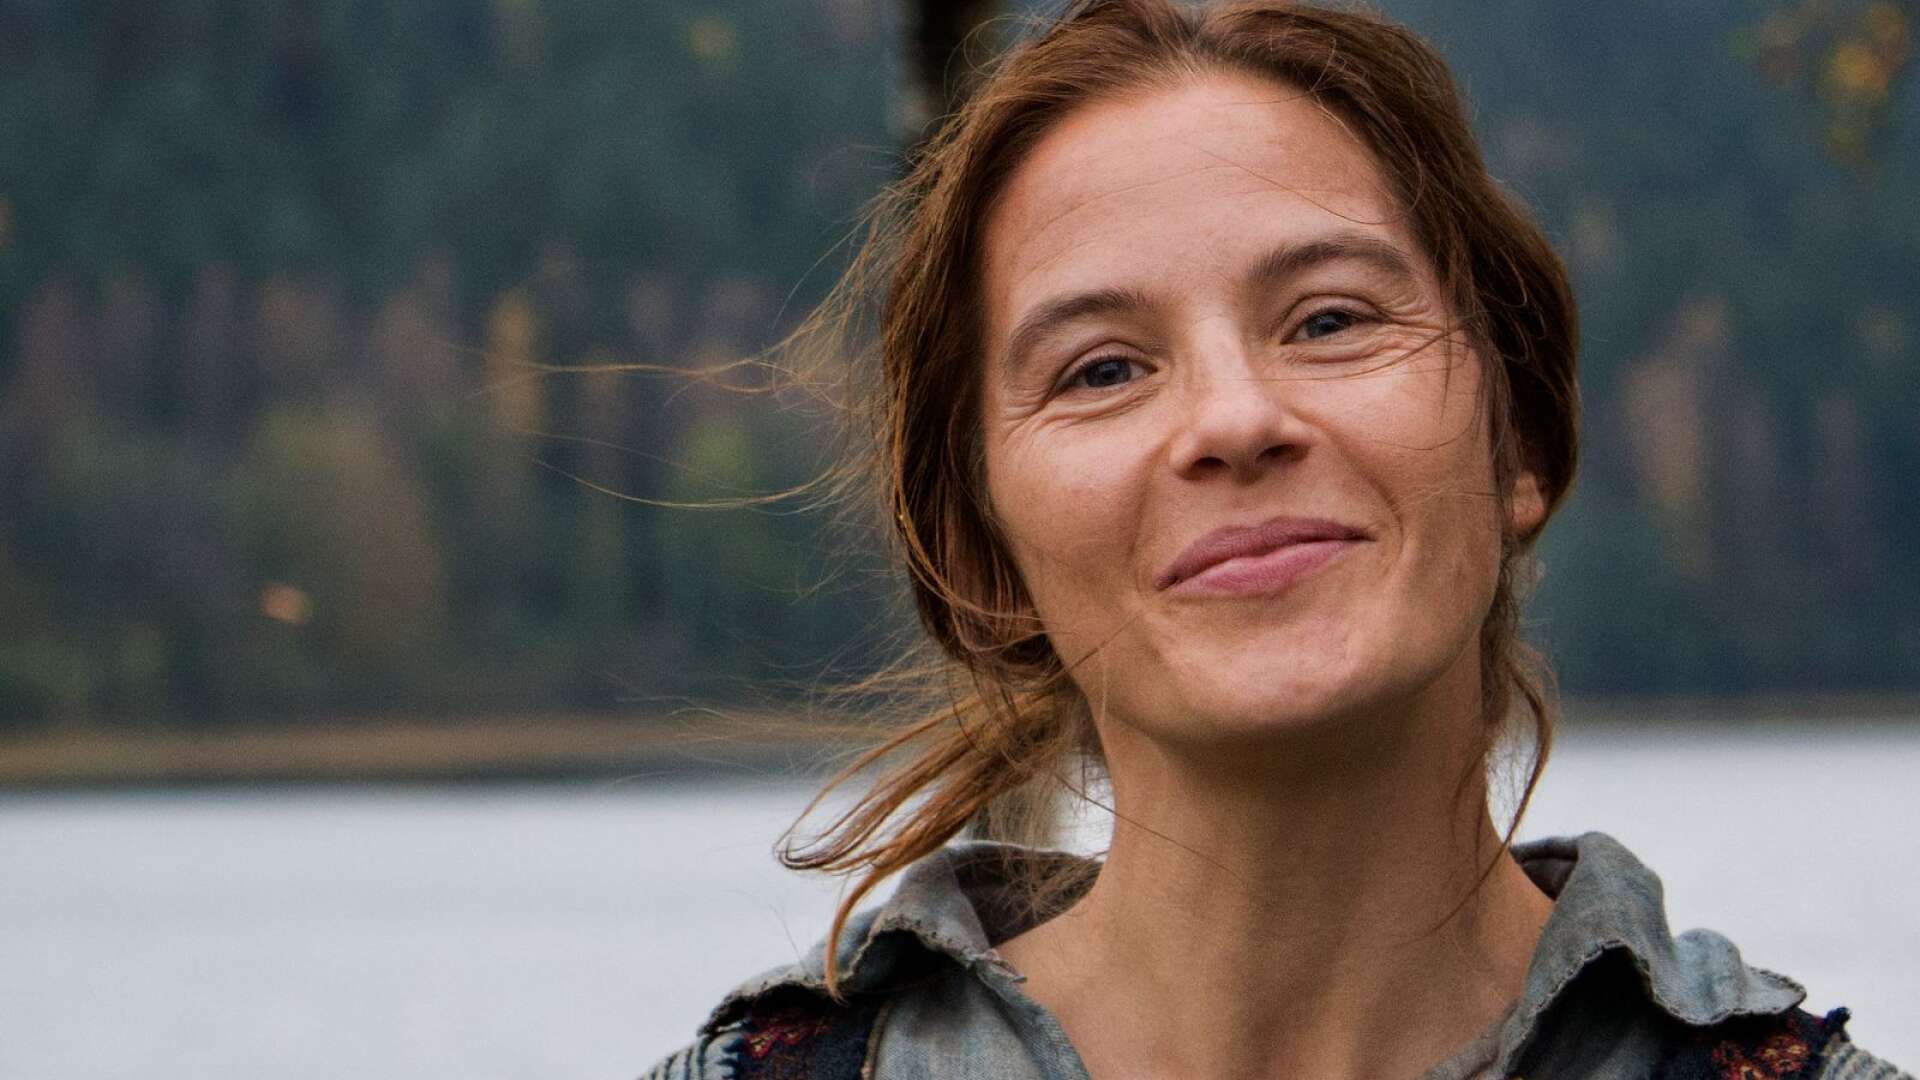 Lisa Carlehed är nominerad för huvudrollen i ”Utvandrarna” som har premiär på juldagen.